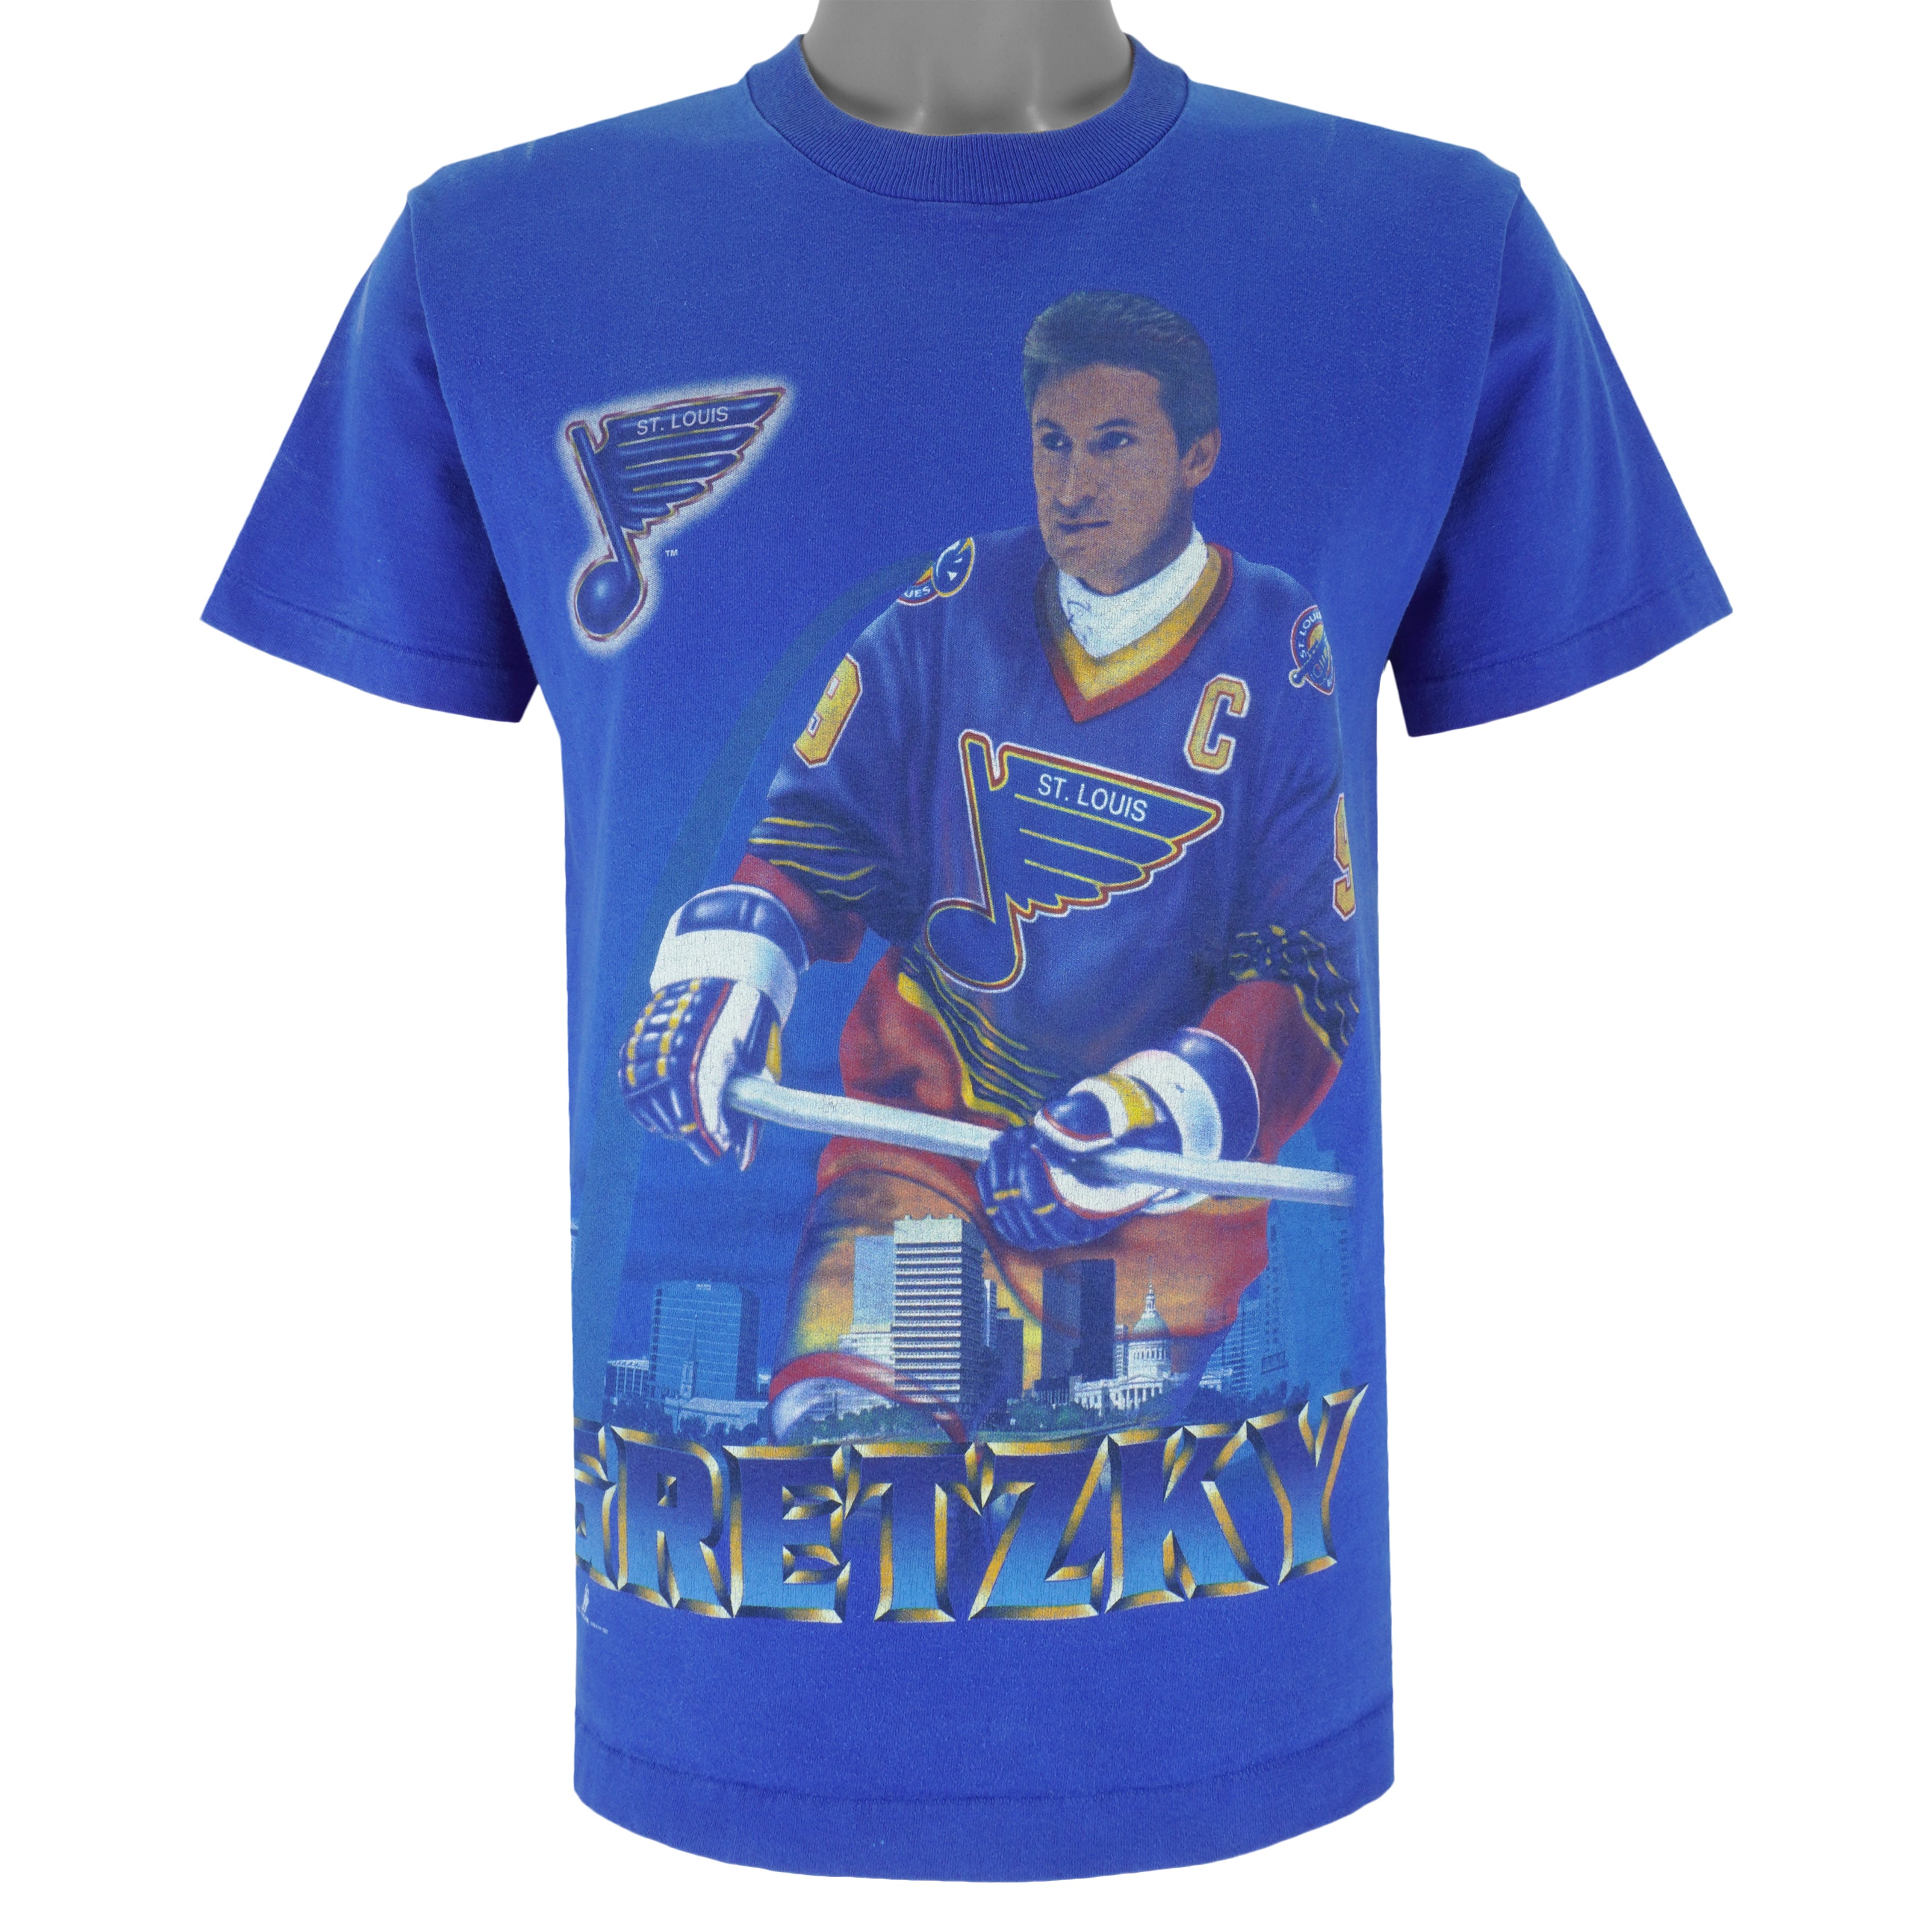 Gildan, Shirts, Vintage Nhl St Louis Tshirt St Louis Shirt Ice Hockey  Shirt Nhl Shirt